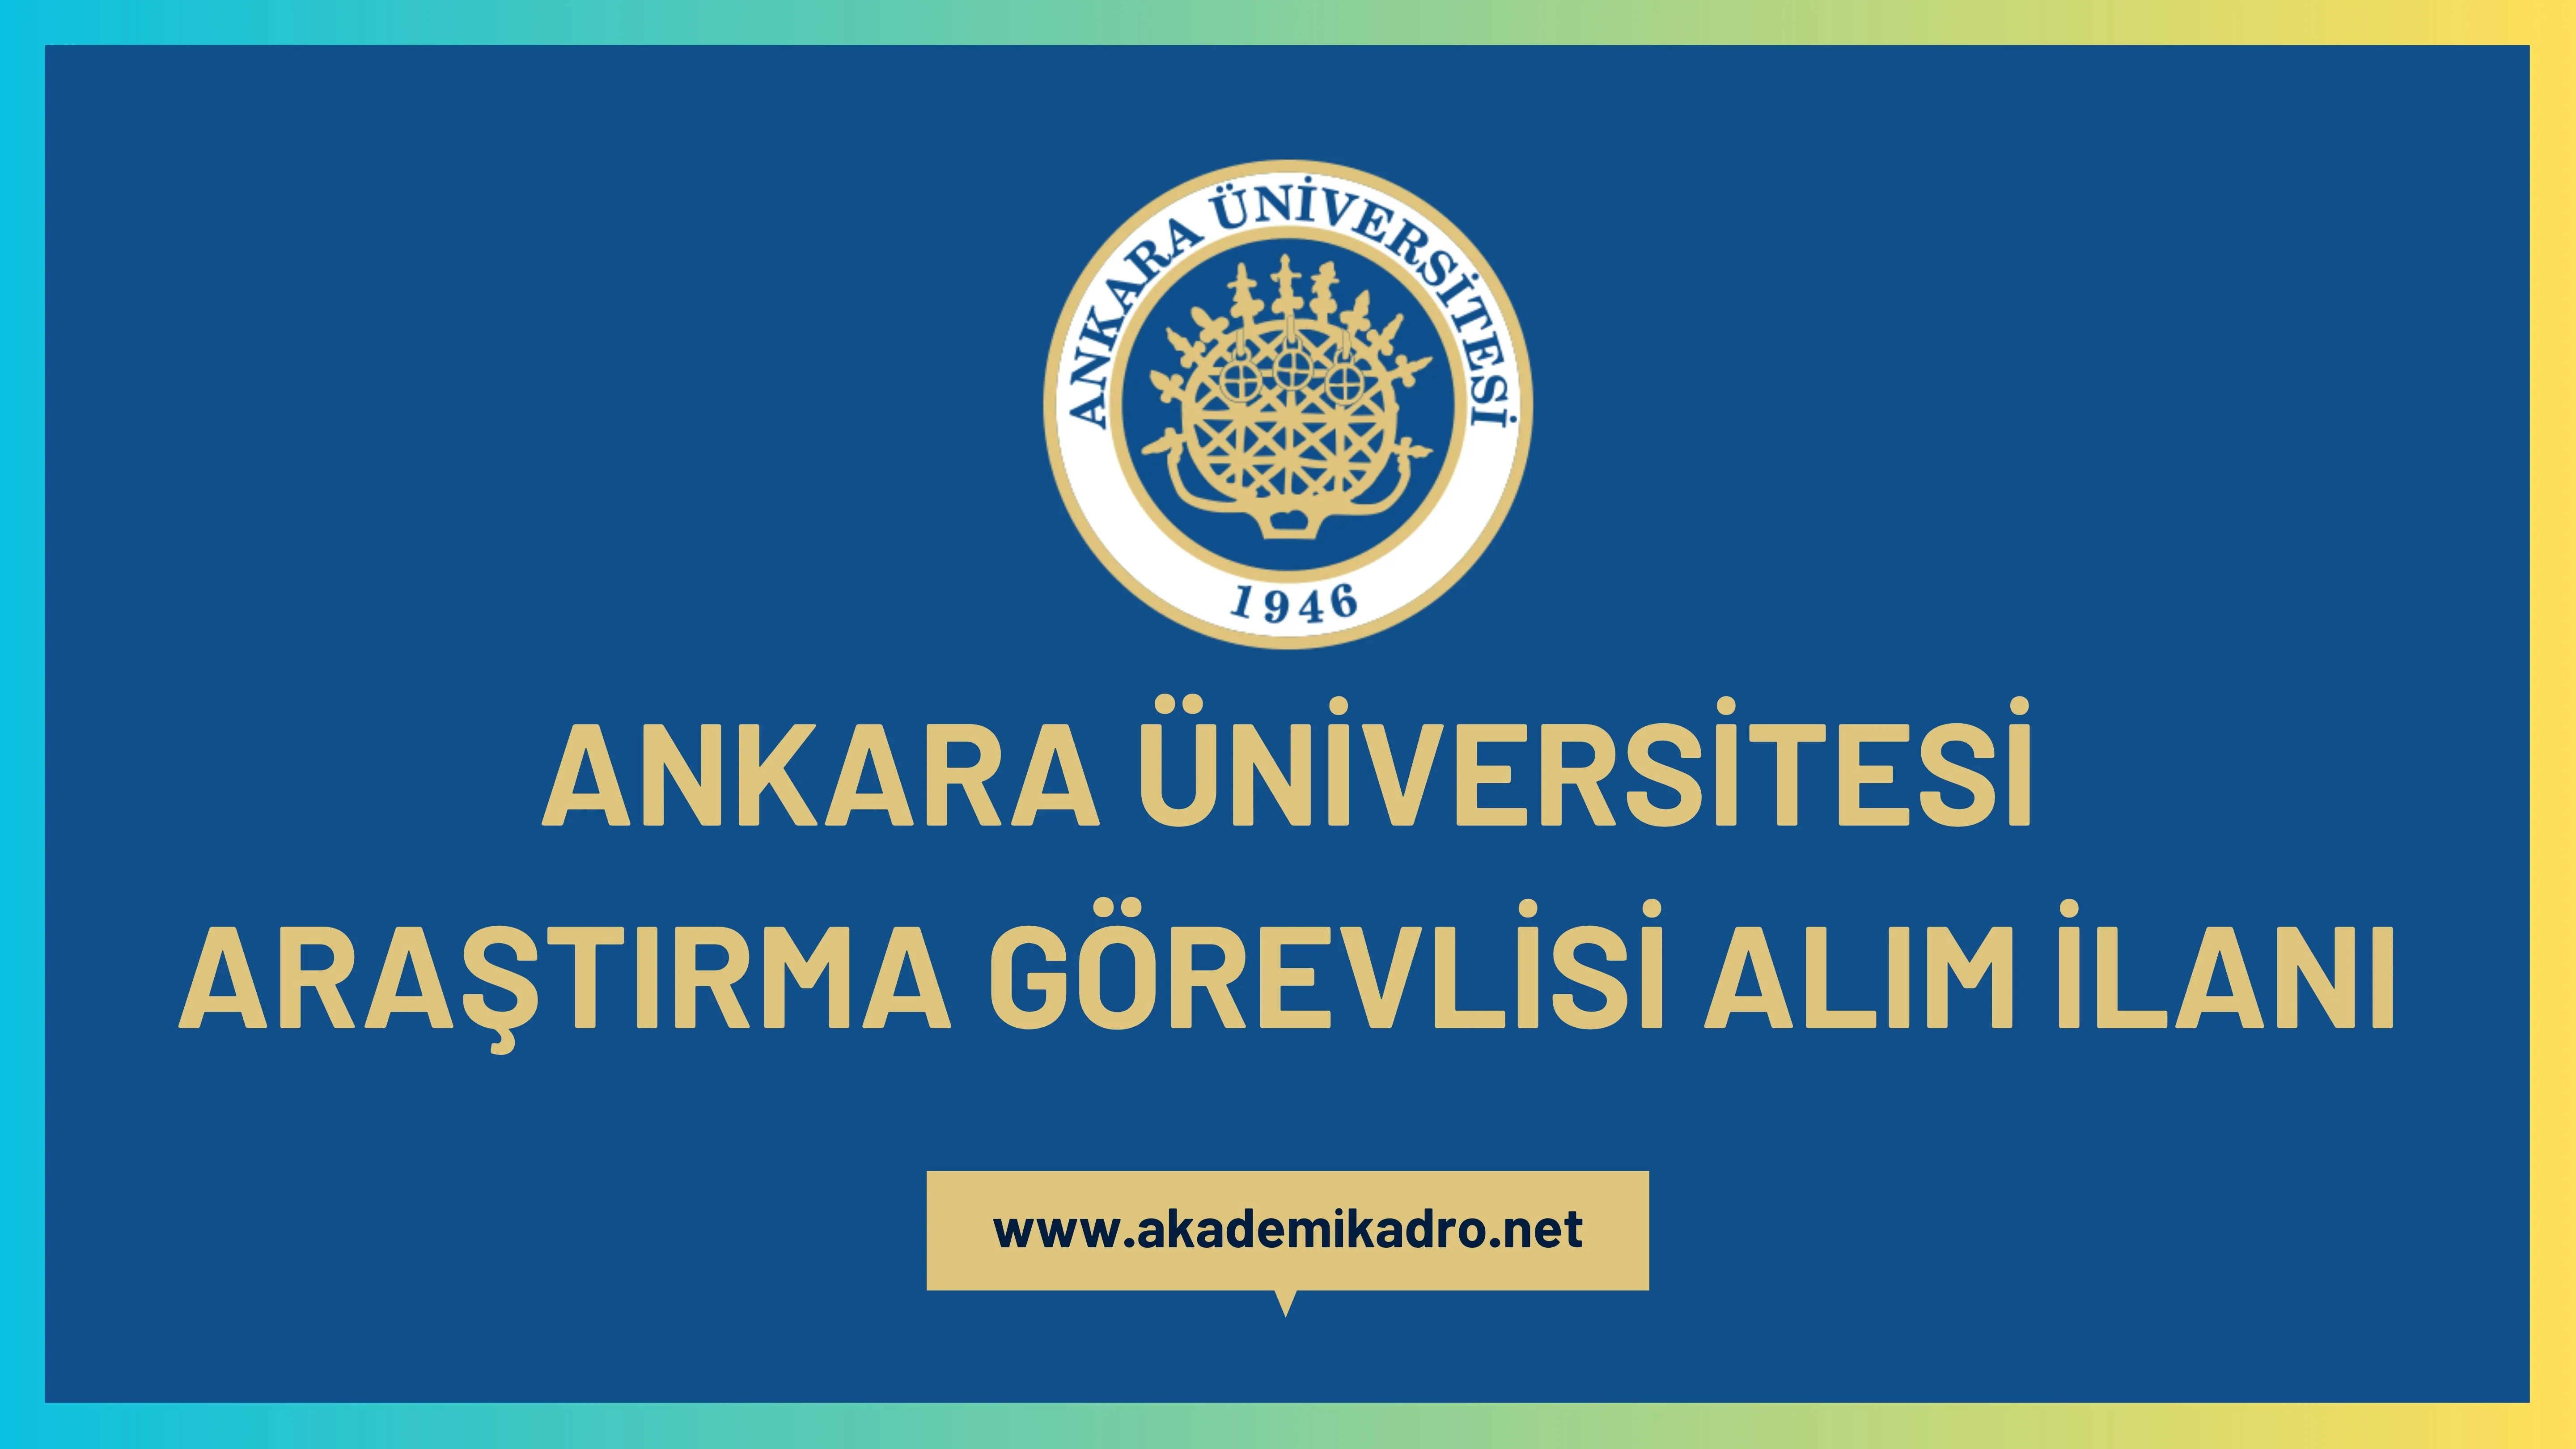 Ankara Üniversitesi birçok alandan 22 araştırma görevlisi alacak.